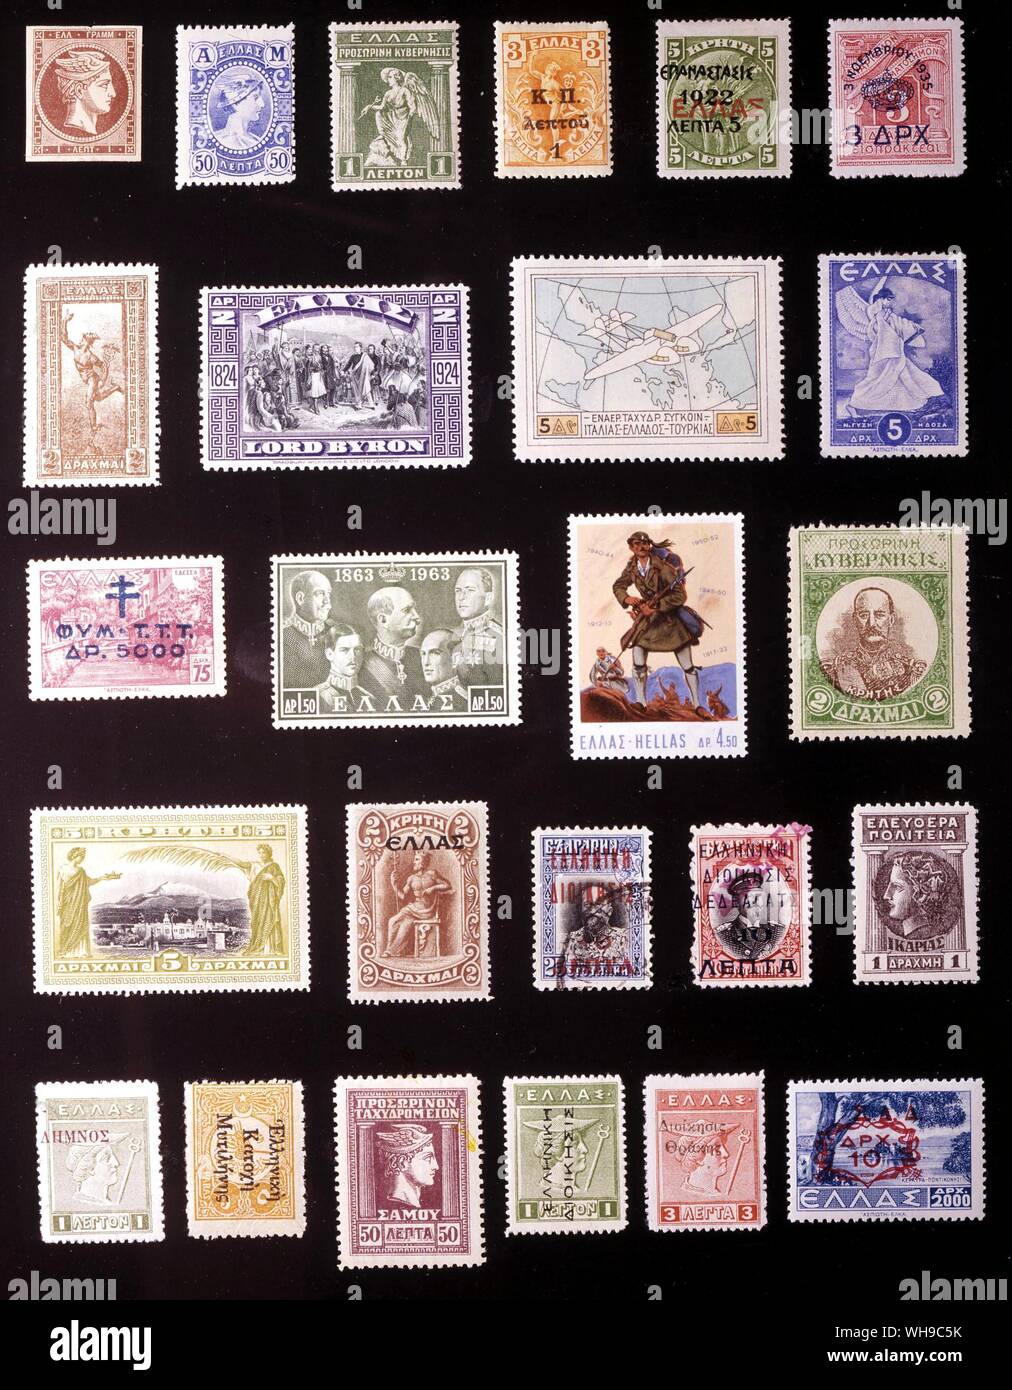 Europa - Grecia: (da sinistra a destra) 1. 1 leptone, 1861, 2. 50 lepta, 1902, 3. Governo Provvisorio, 1 leptone, 1917, 4. 3 + 1 lepta, 1917, 5. 5 lepta, 1923 6. 3 drachmae, 1935, 7. 2 drachmae, 1901, 8. 2 drachmae, 1924, 9. 5 drachmae, 1926, 10. 5 drachmae, 1937, 11. 5.000 drachmae, 1944, 12. 1.50 drachmae, 1962, 13. 4,50 drachmae, 1968, 14. Creta, 2 drachmae, 1905, 15. Creta, 5 drachmae, 1905, 16. Creta, 2 drachmae, 1908, 17. Cavalla, 10 lepta, 1913, 18. Dedeagatz, 10 lepta, 1913, 19. Icaria, 1 dracme, 1912, 20. Lemnos, 1 leptone, 1912, 21. Mytilene, 5 capoversi, 1912, 22. Samos, 50 lepta, 1912, 23. Foto Stock